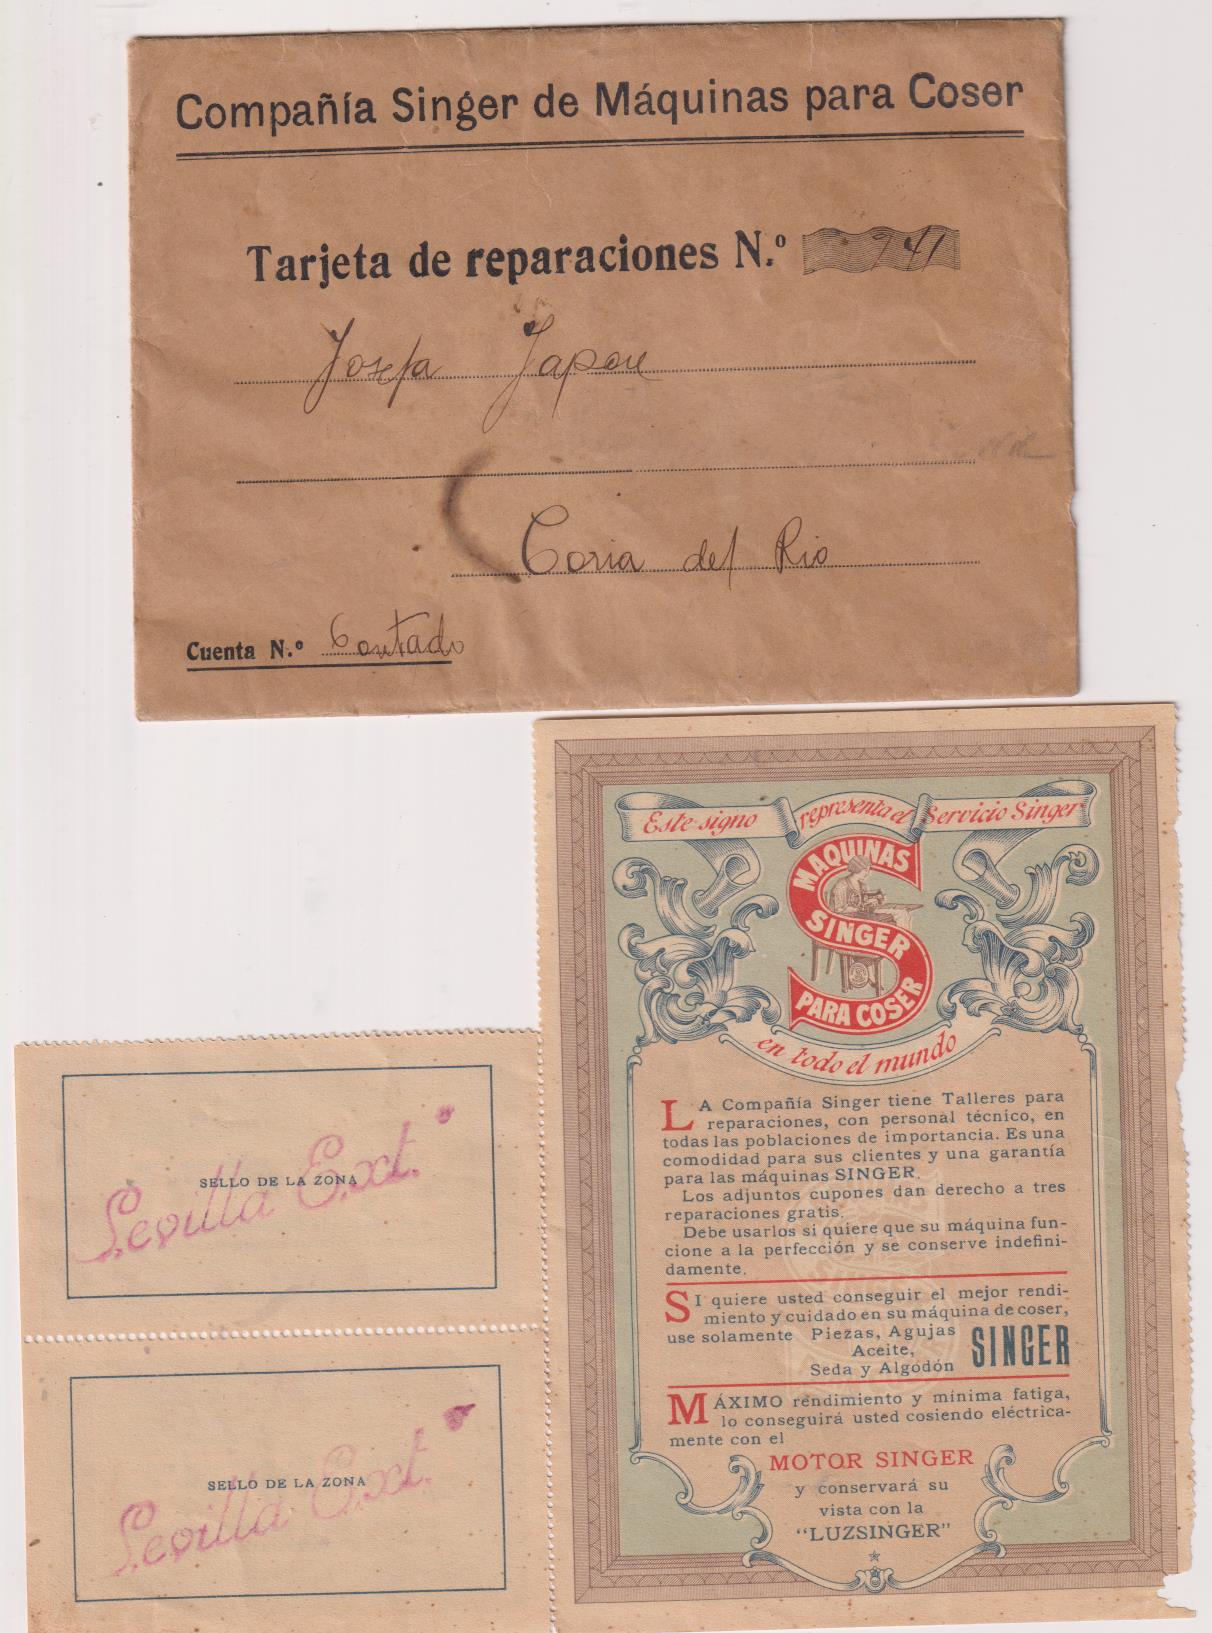 Carta de Siger (Máquinas de coser) a Coria del Río. Contiene cupones de reparación gratuita